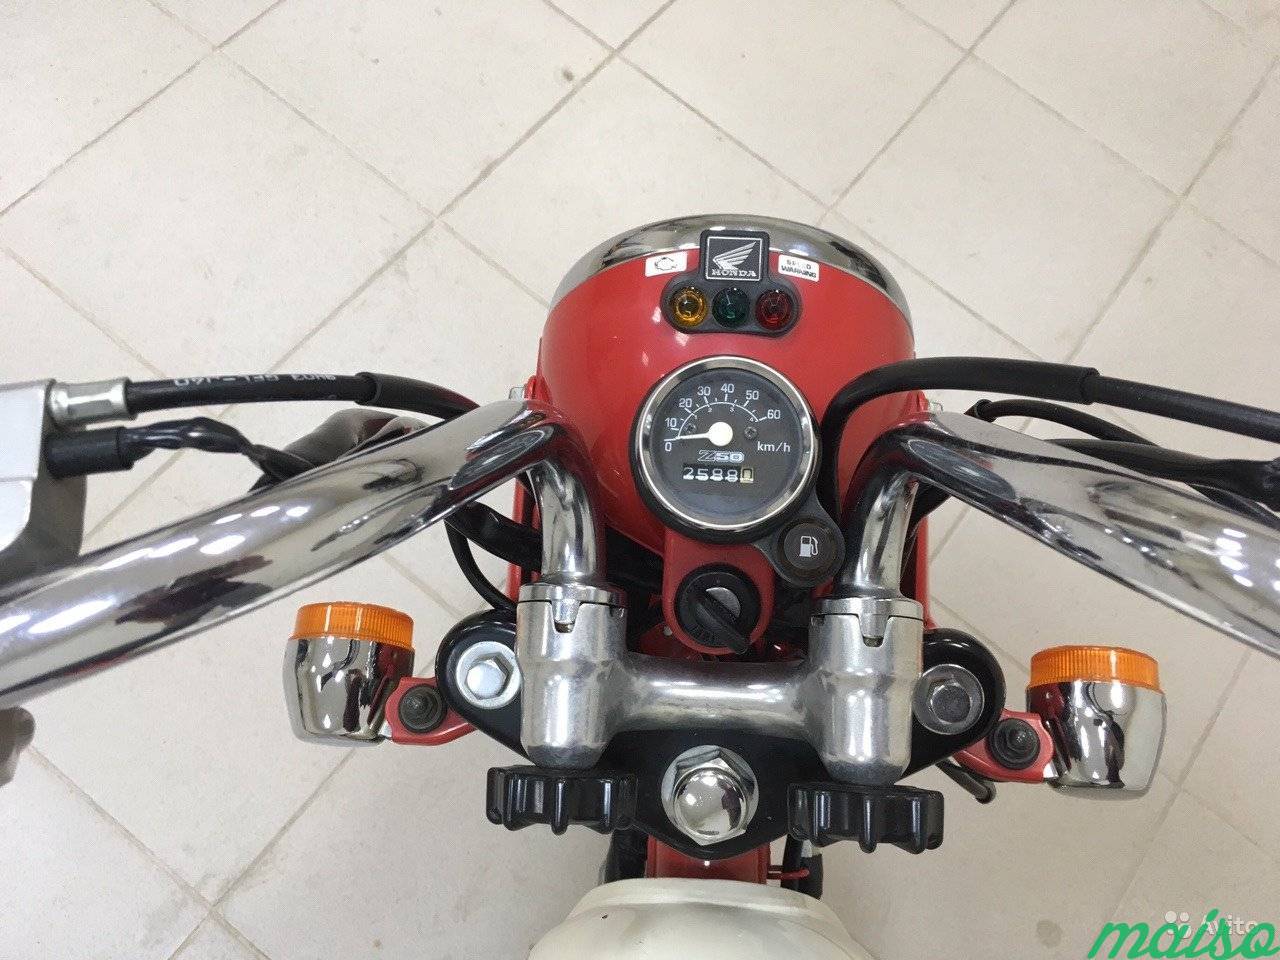 Мини мотоцикл Honda monkey z50 в Санкт-Петербурге. Фото 8